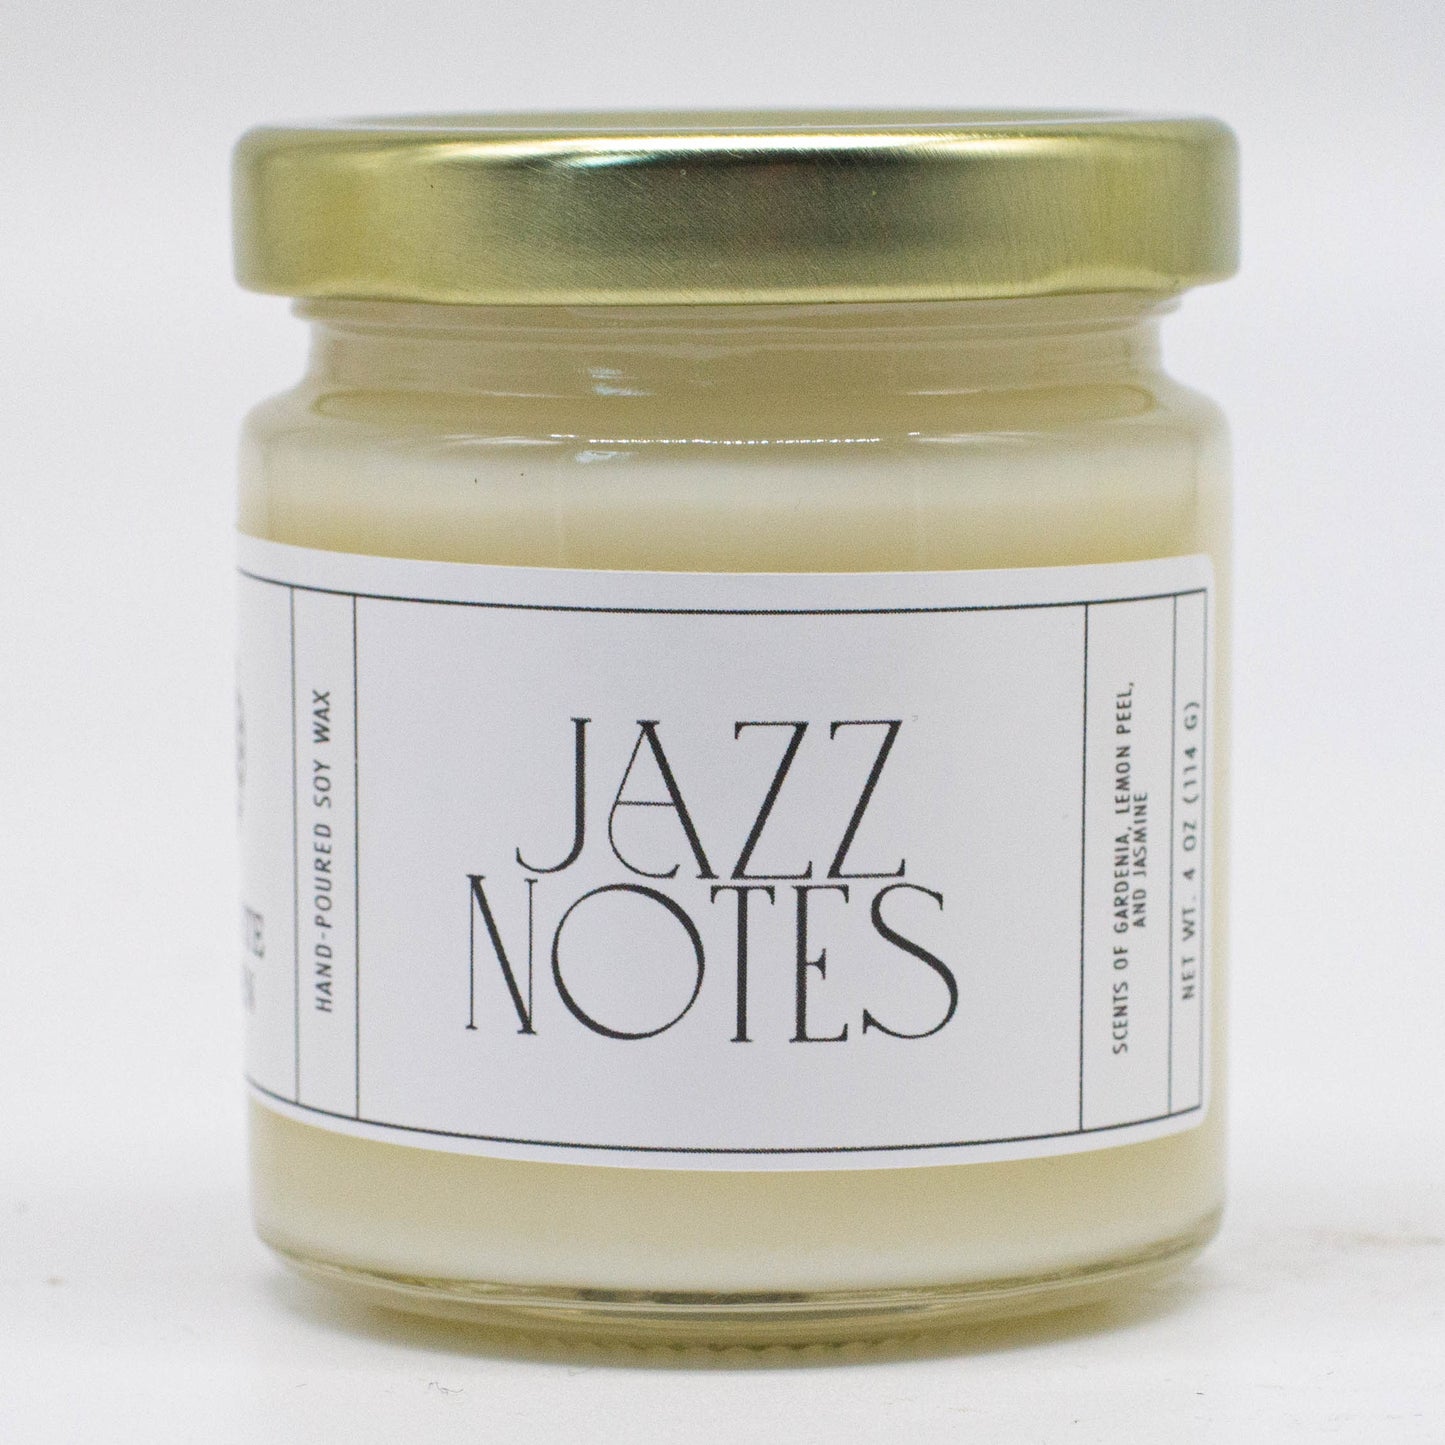 Jazz Notes, Gardenia and Lemon Peel Soy Candle, 4 oz